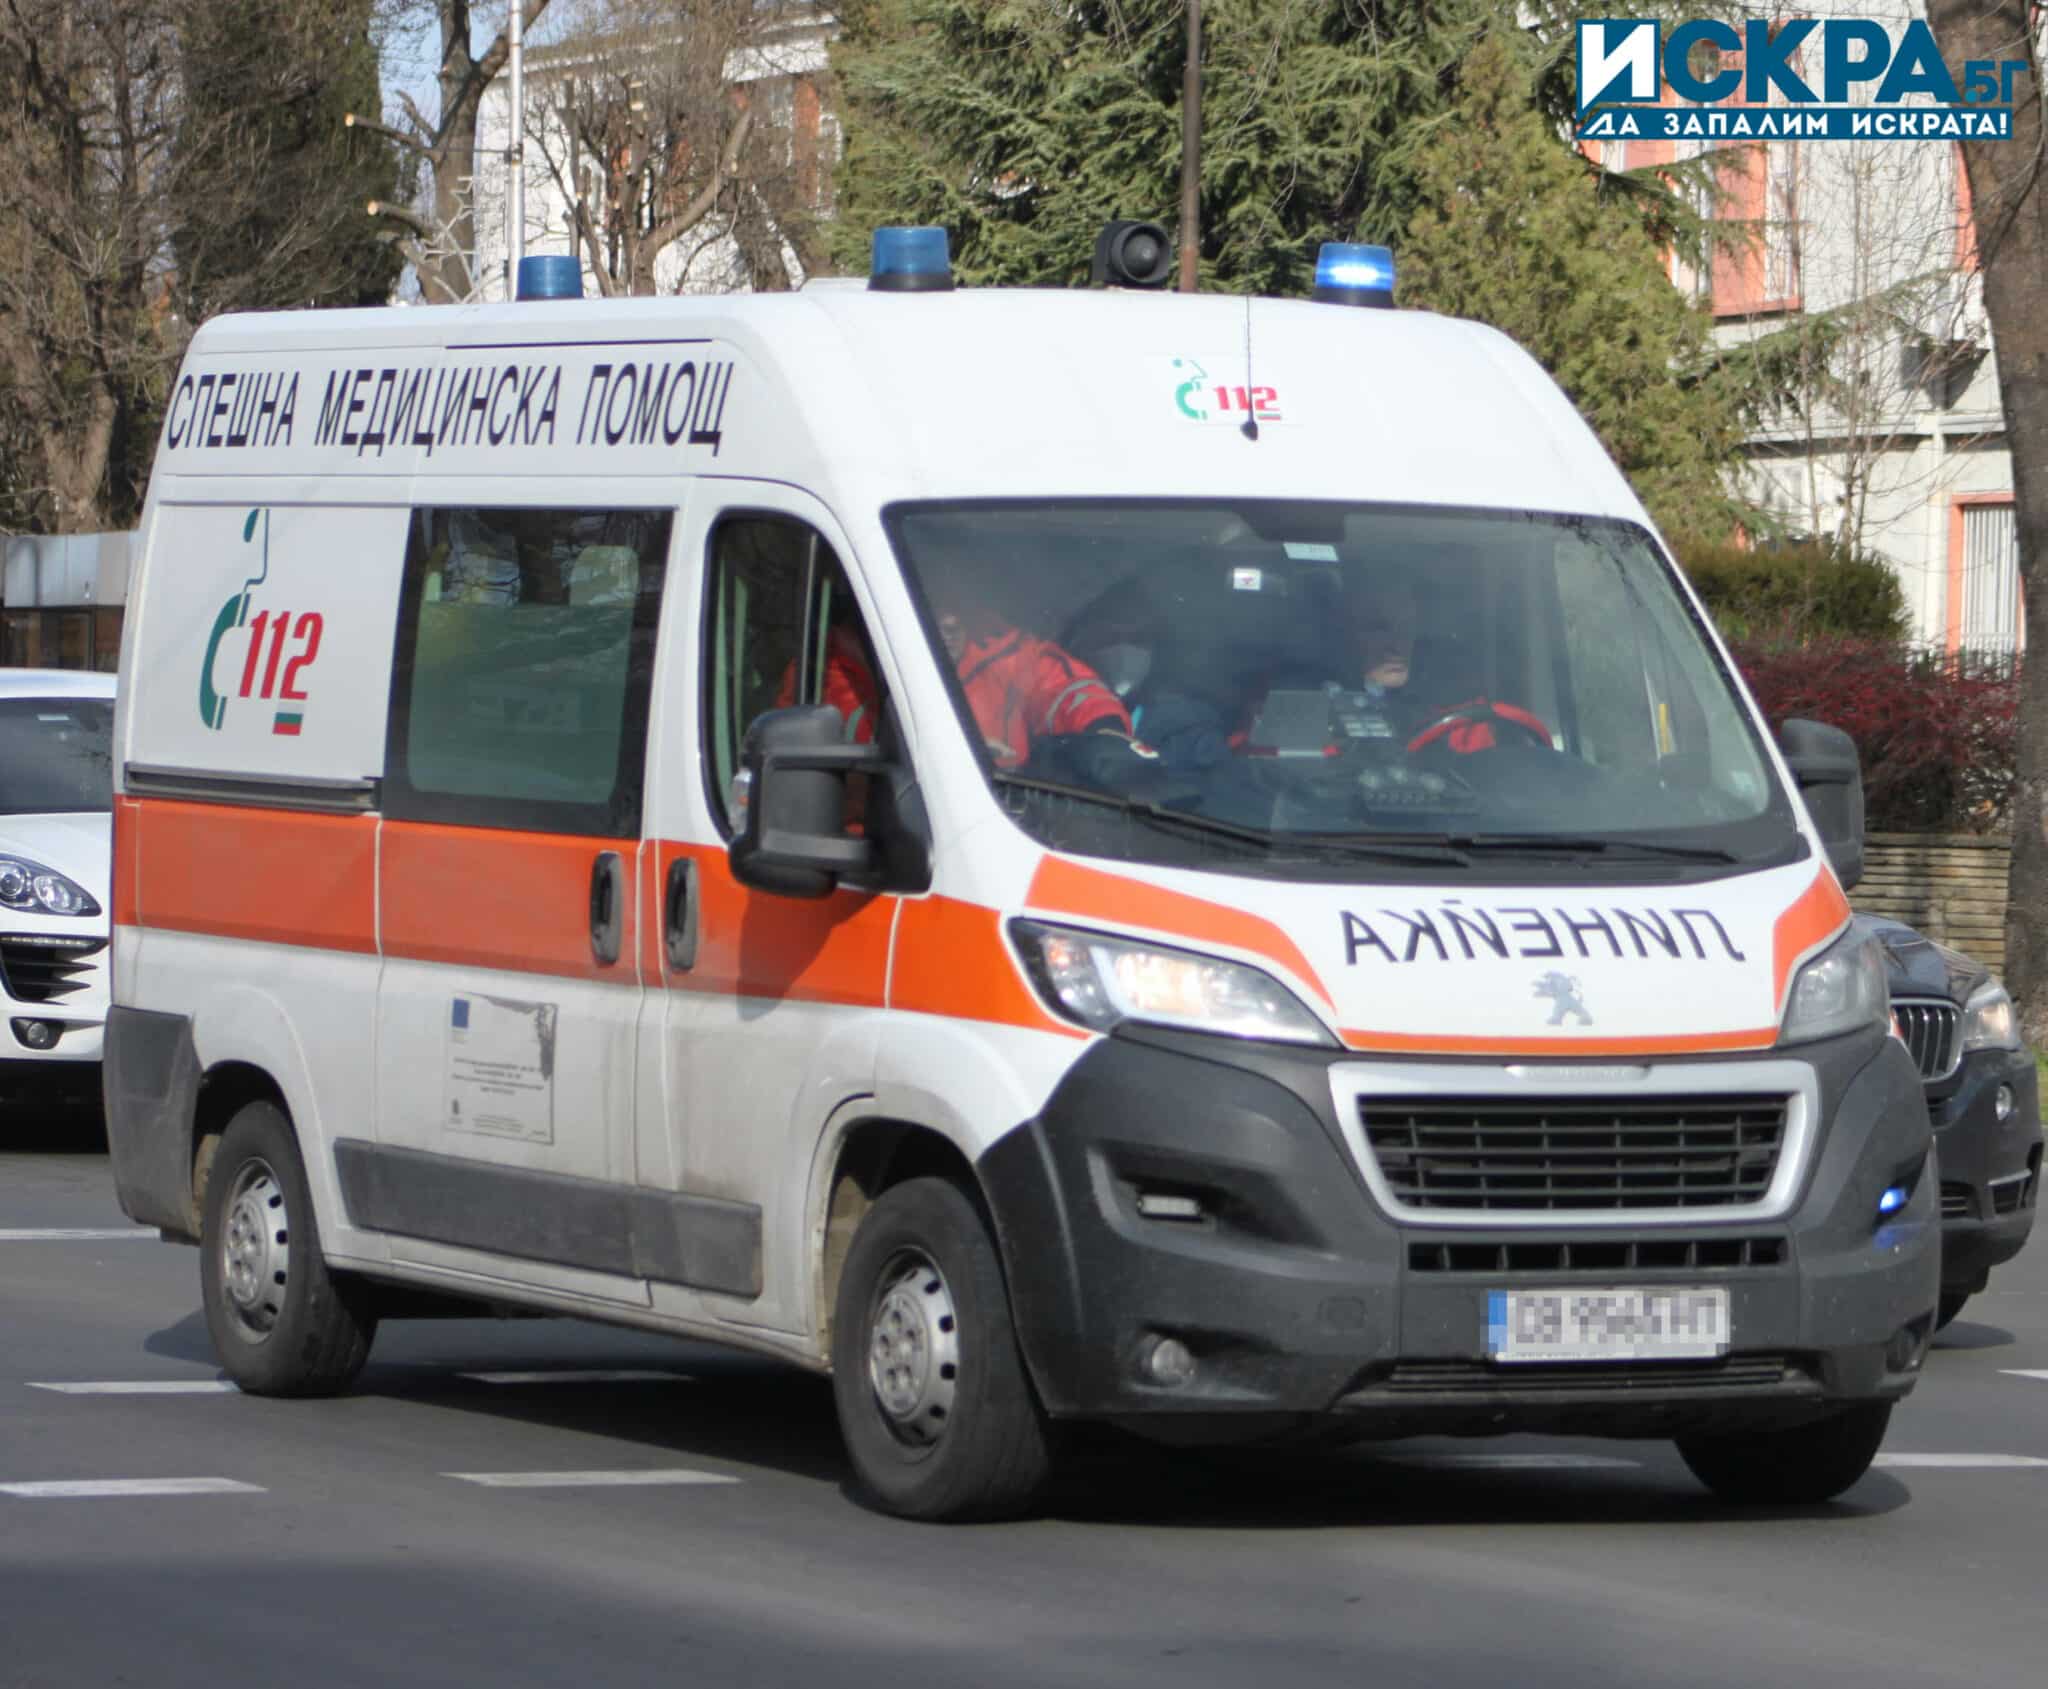 12 годипно момче от Полша е било блъснато от автомобил в